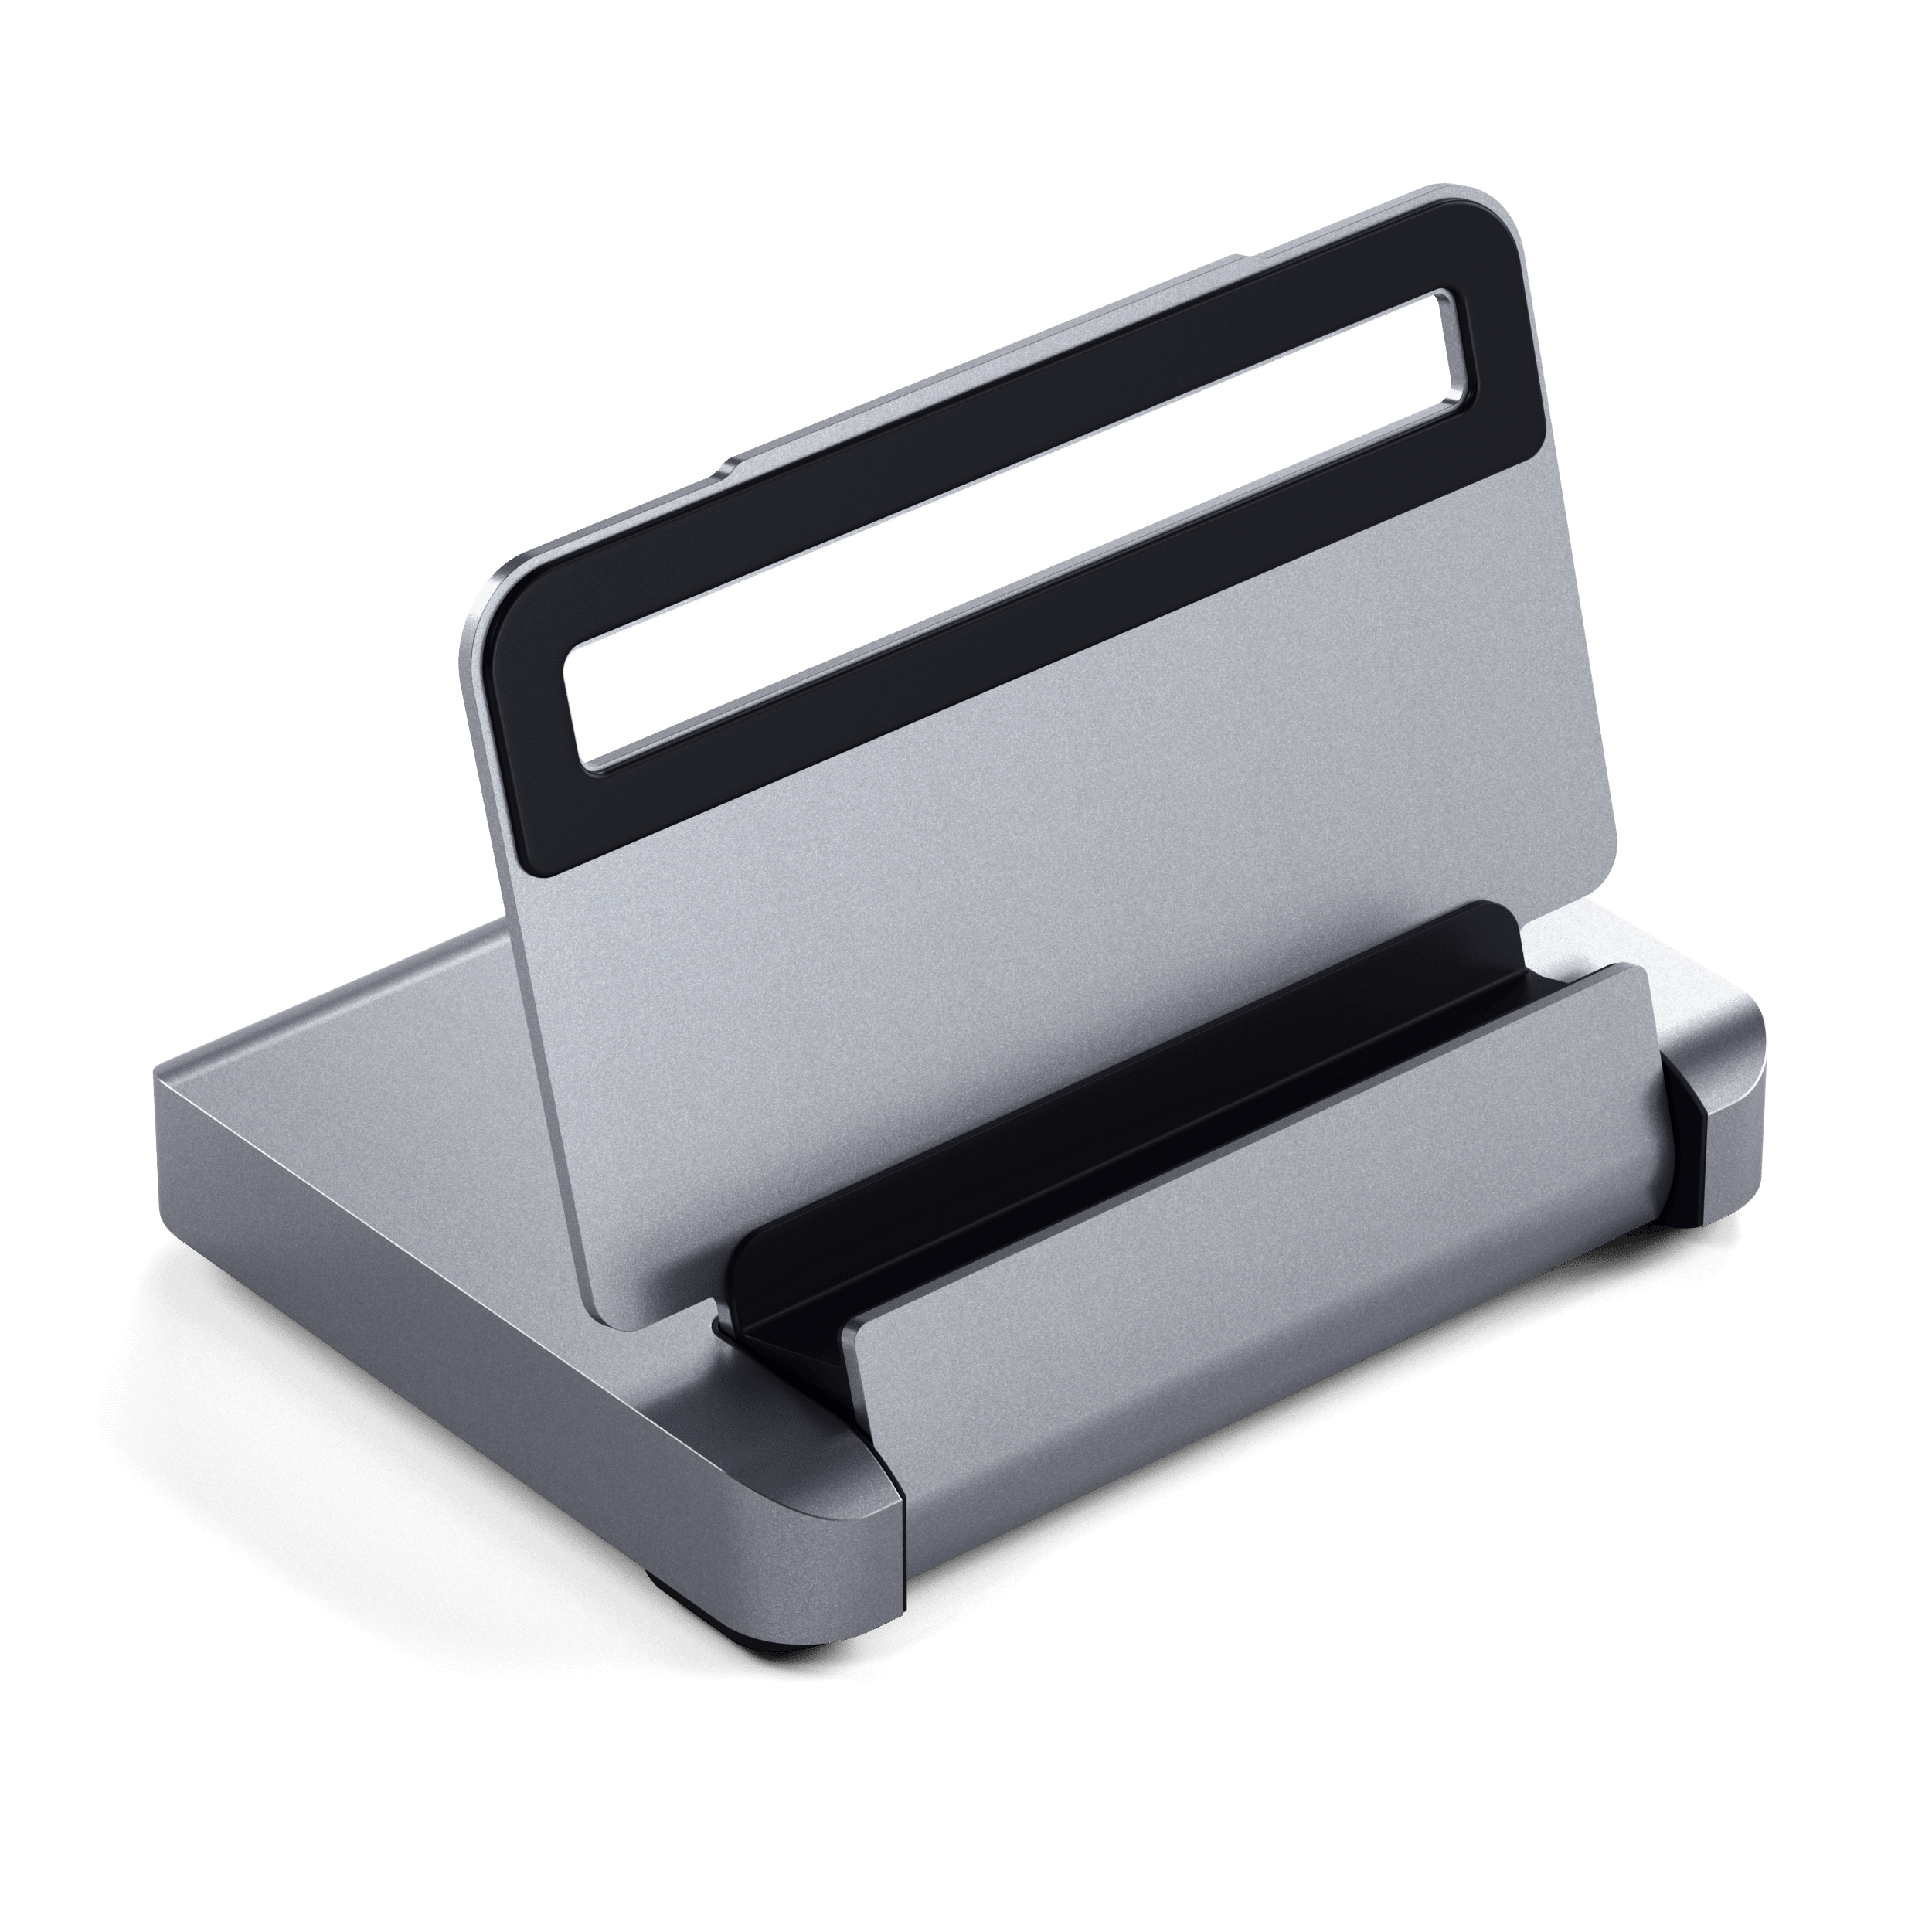 Satechi USB-C 6-in-1 タブレットスタンド ハブ 折り畳み式 (iPad/Mini